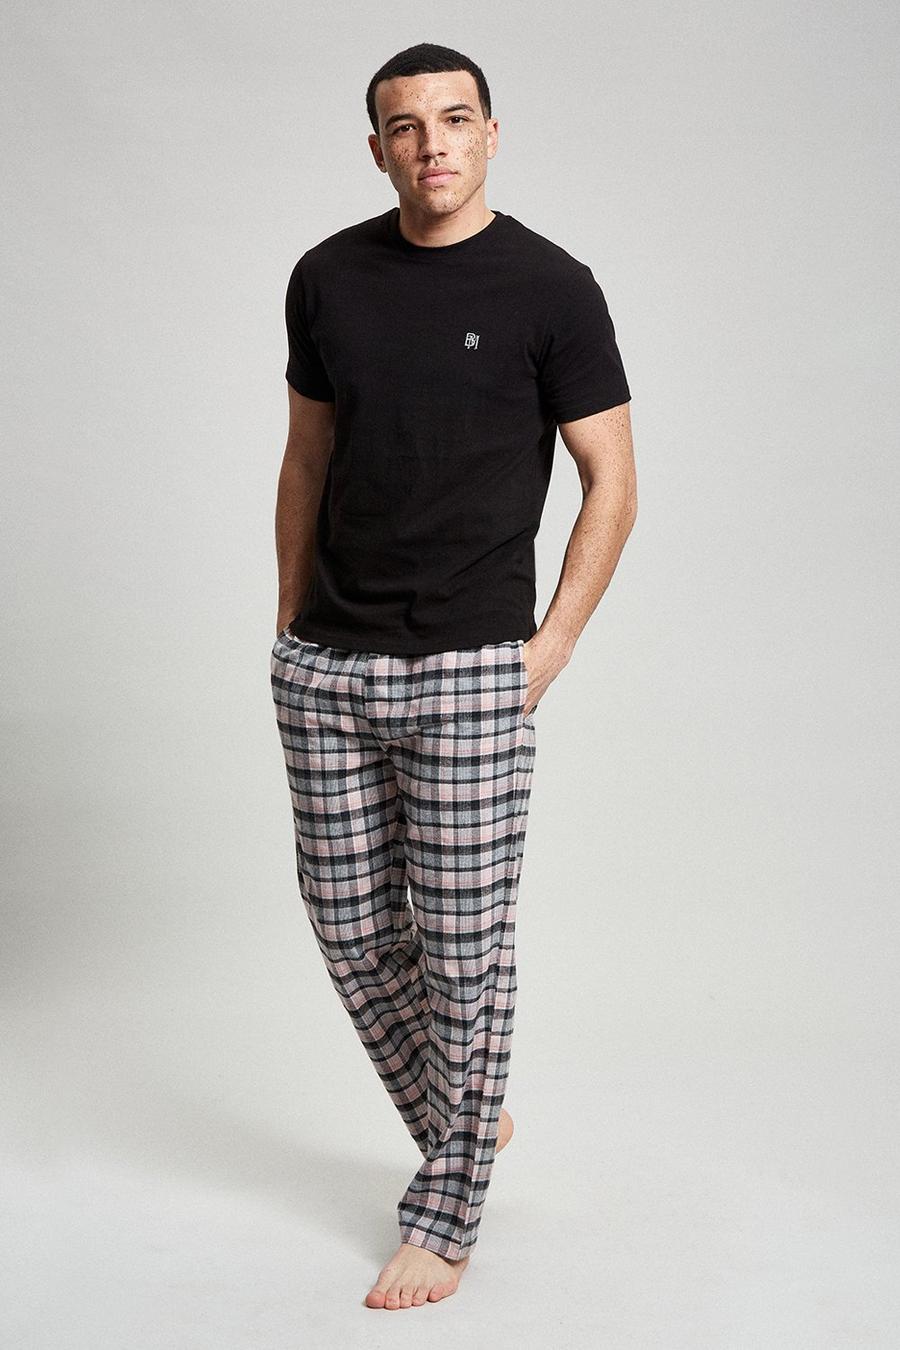 Black Short Sleeve T-Shirt & Check Pyjama Set